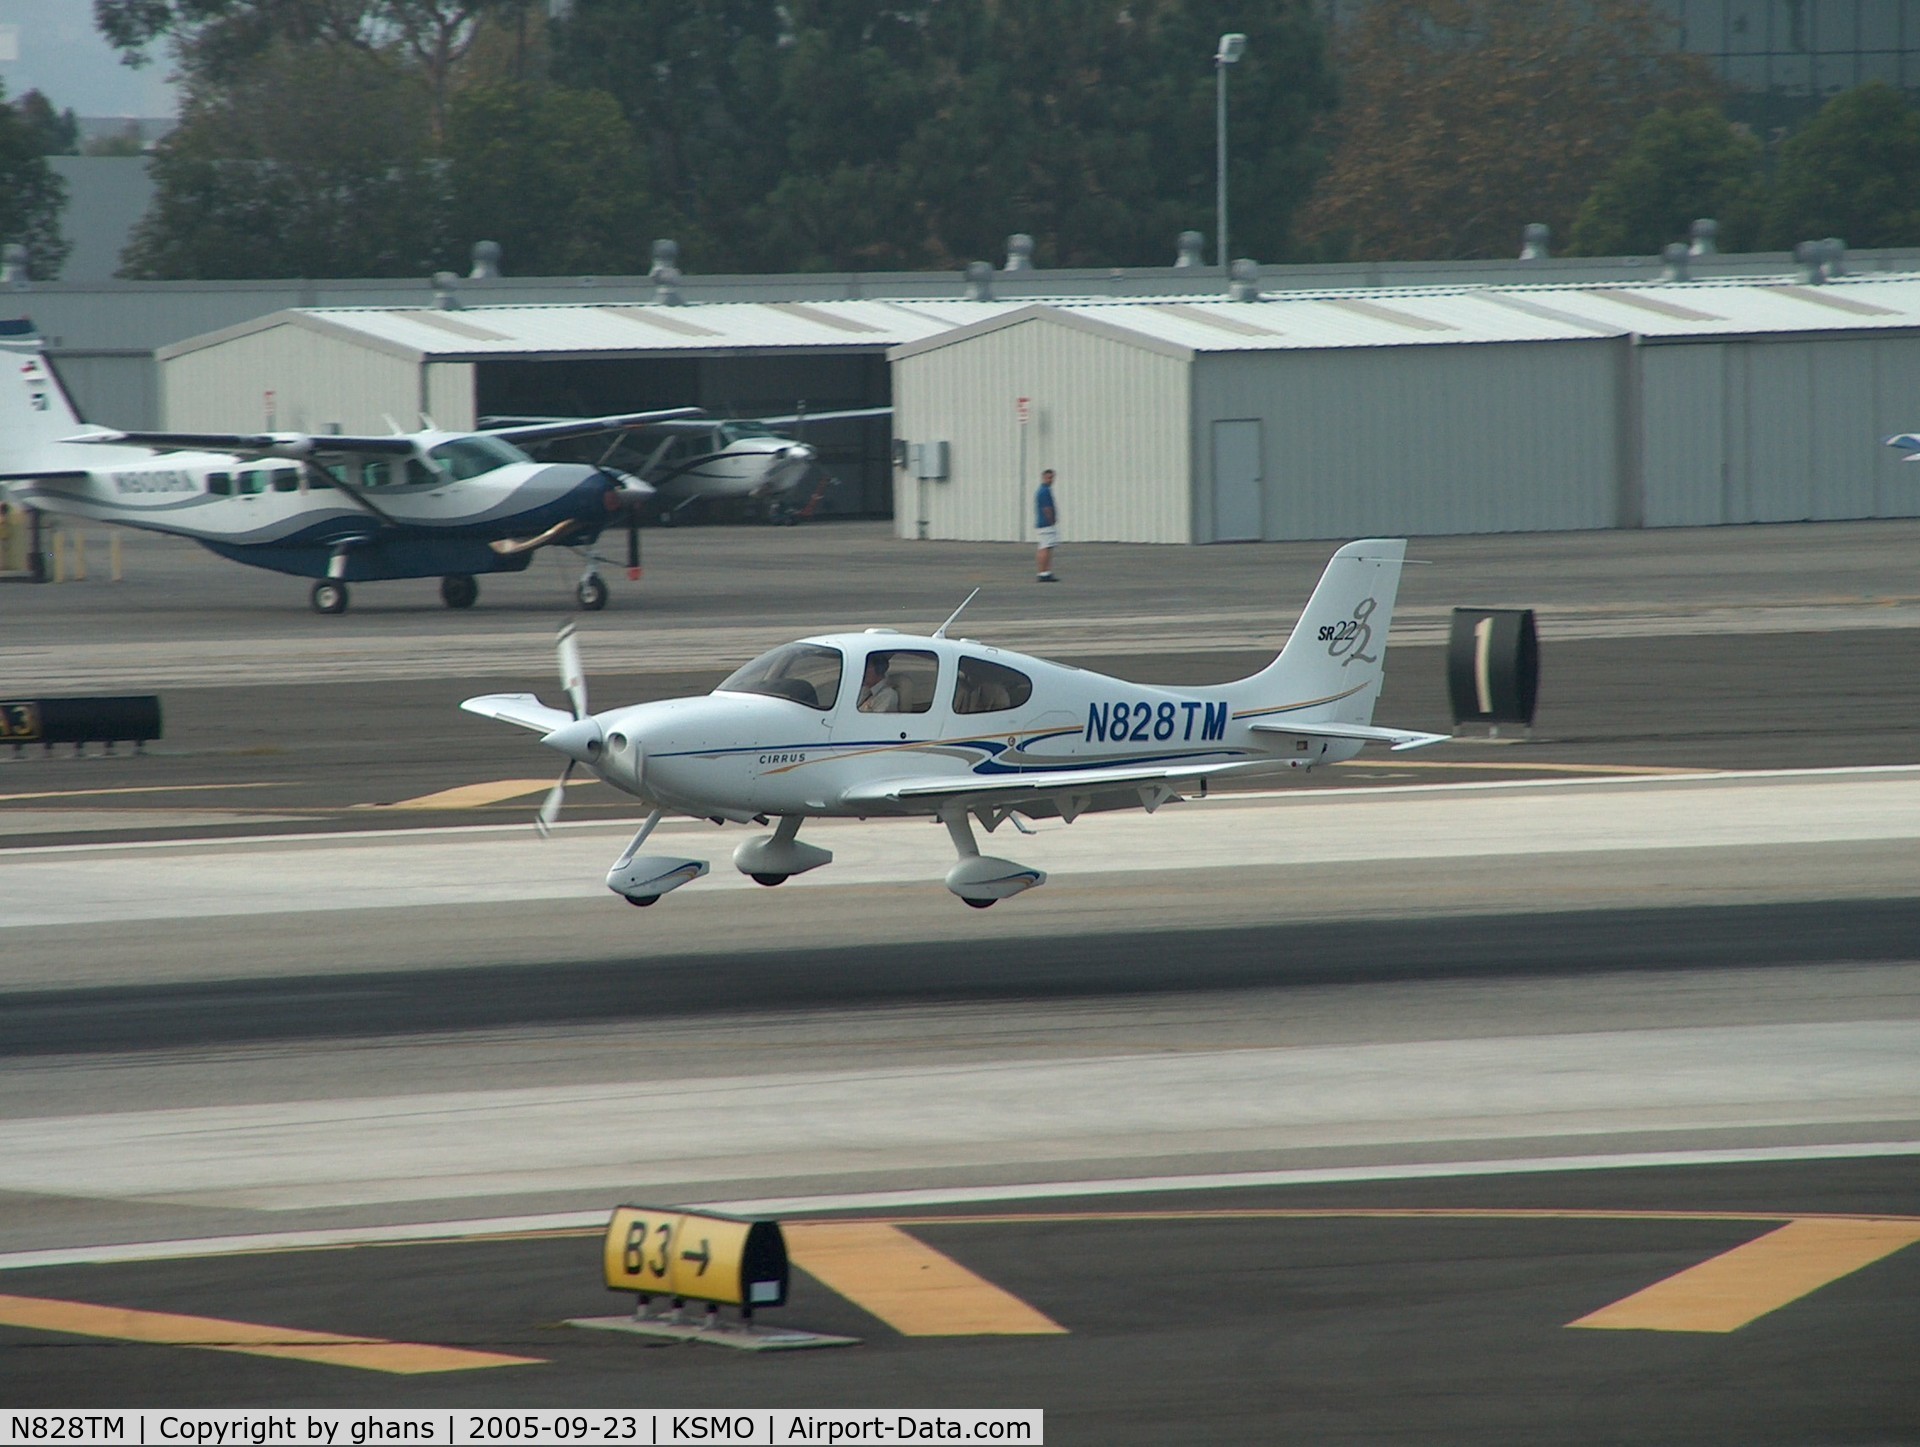 N828TM, 2004 Cirrus SR22 G2 C/N 0943, Landing at rw21